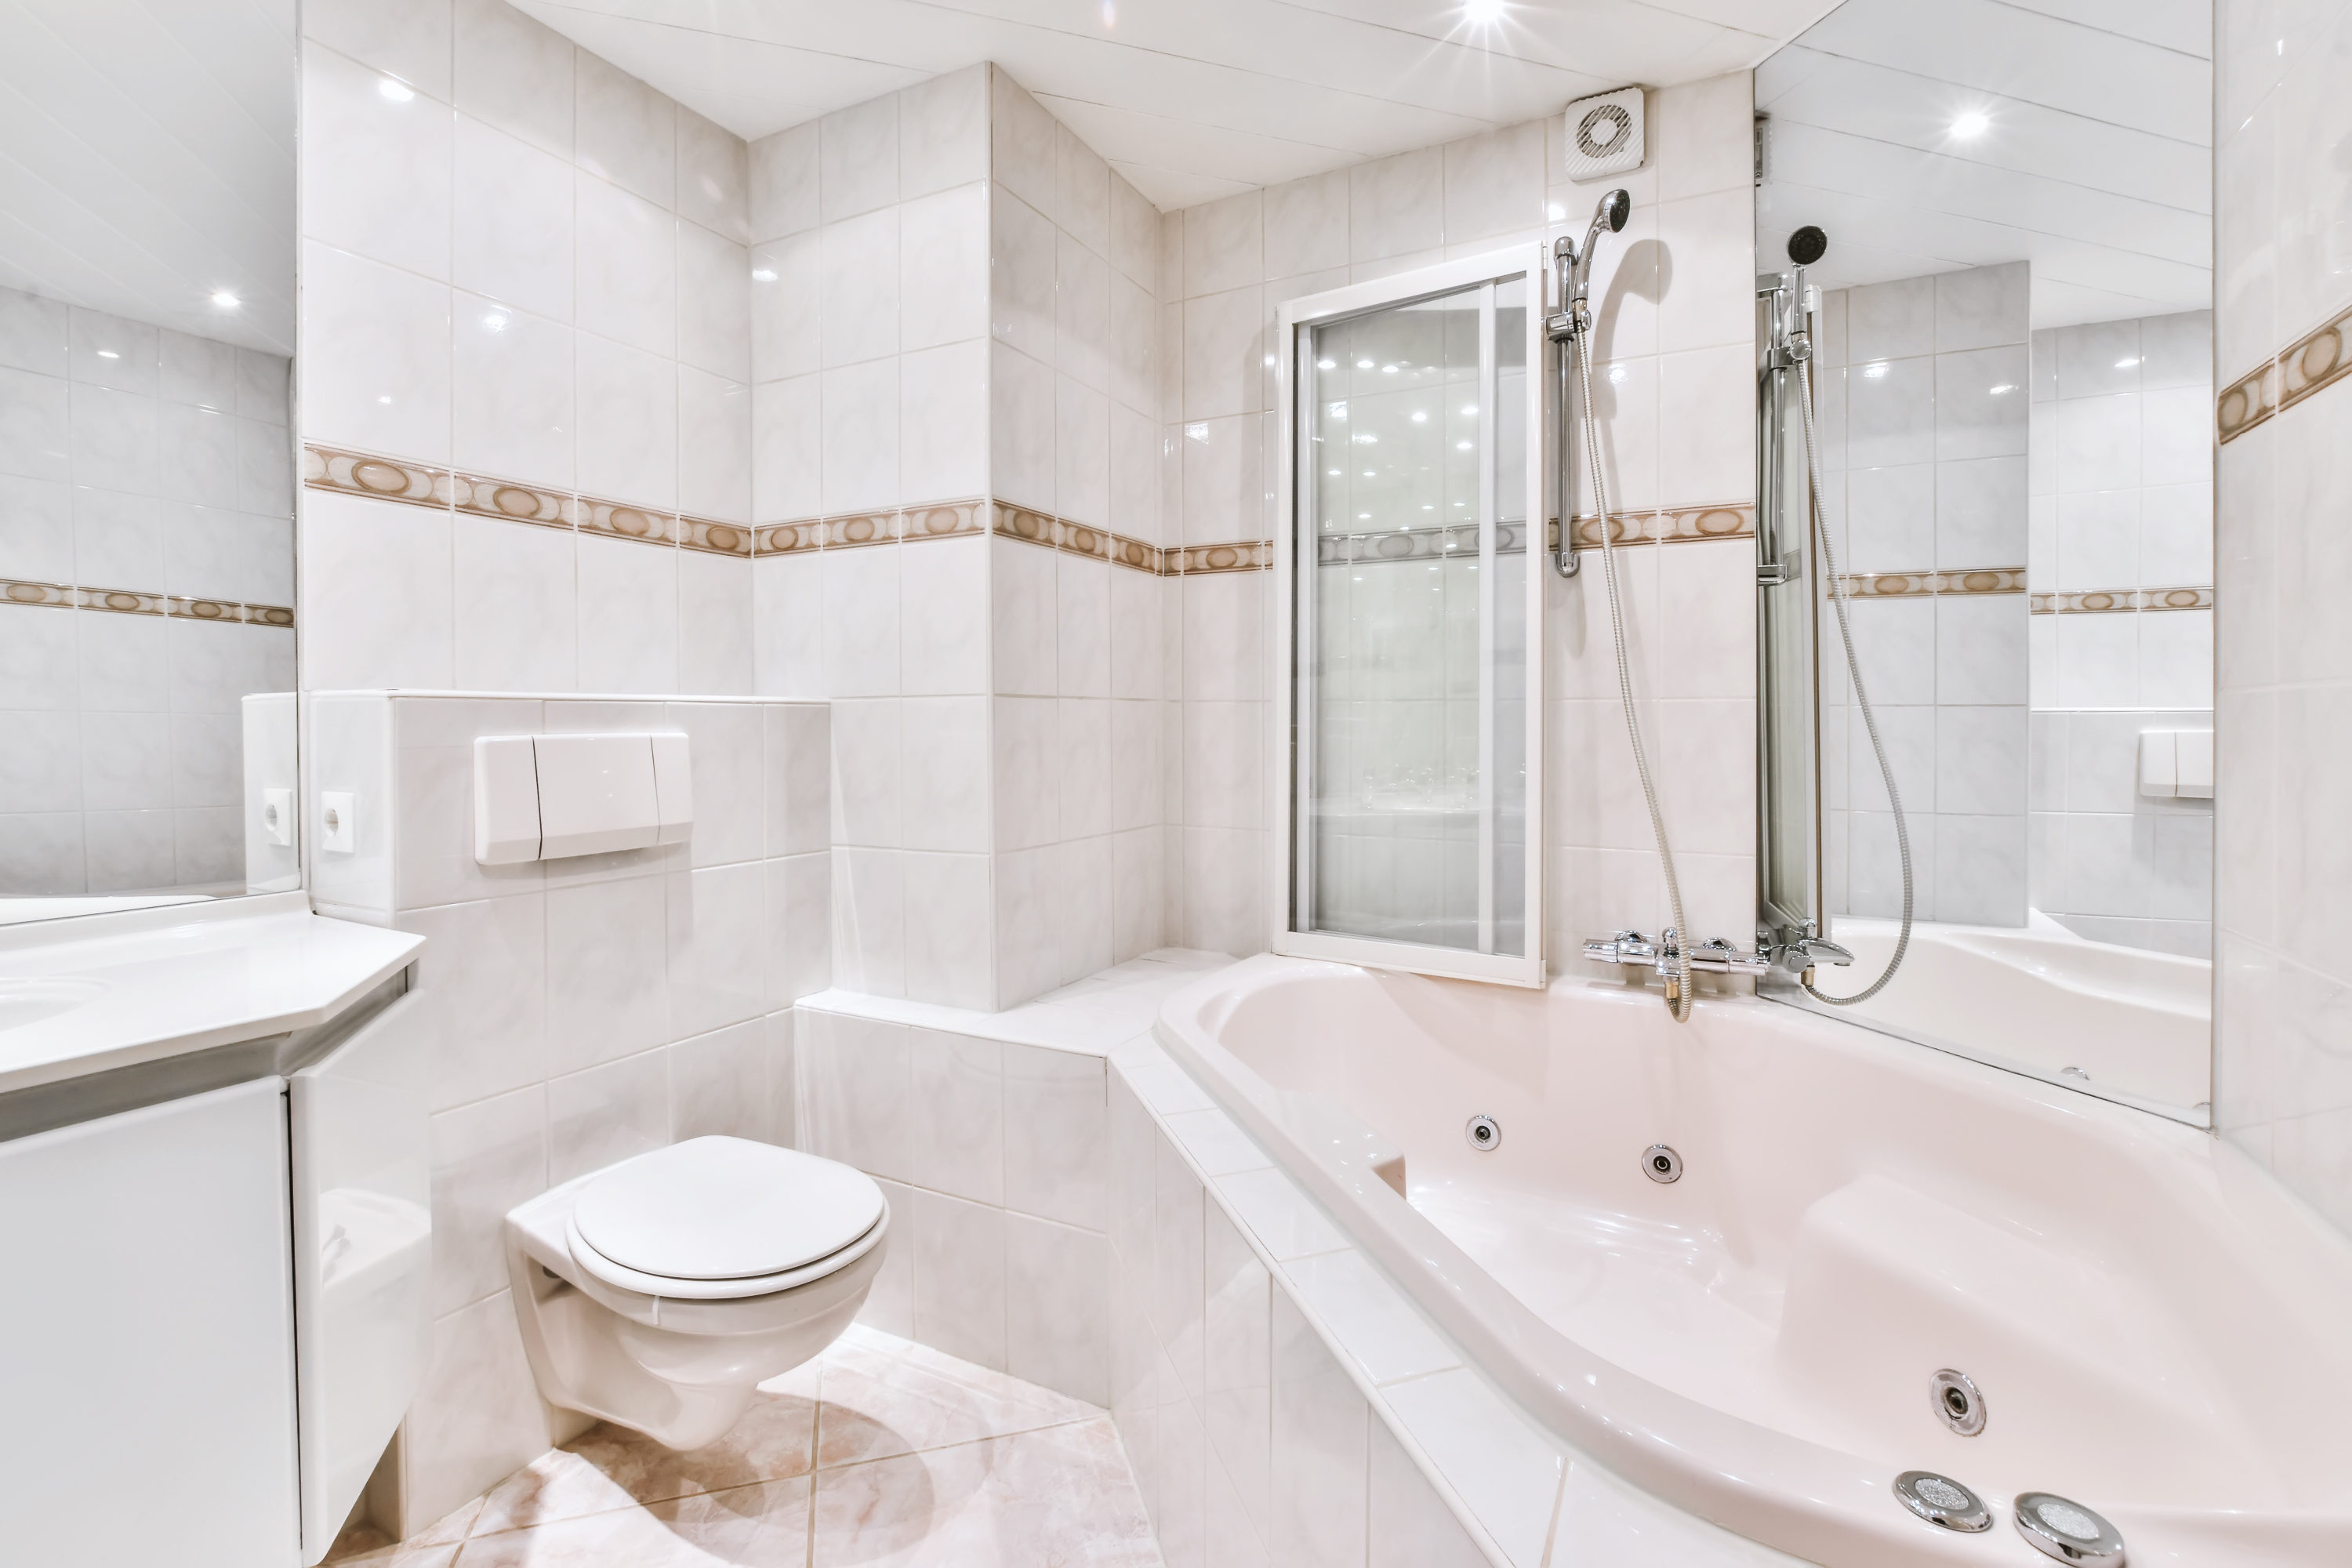 wc suspendu blanc dans une salle de bain moderne blanche